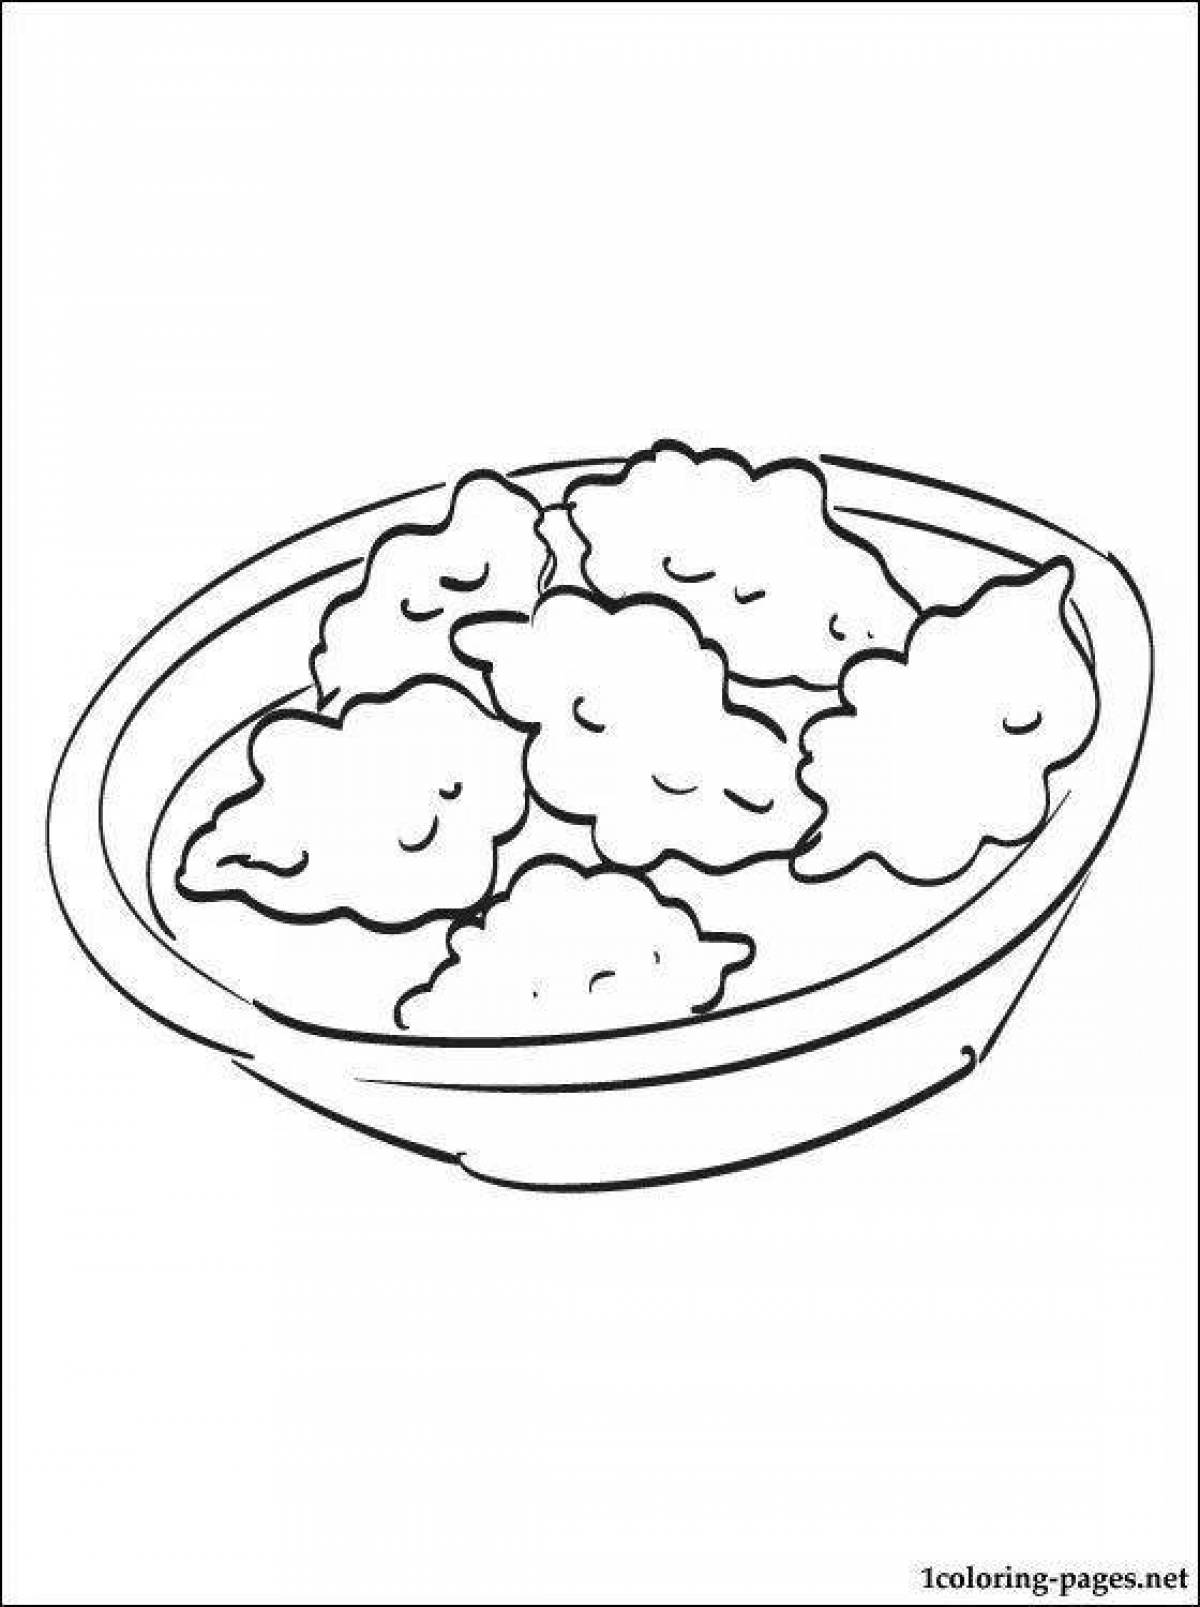 Seductive dumplings in a bowl